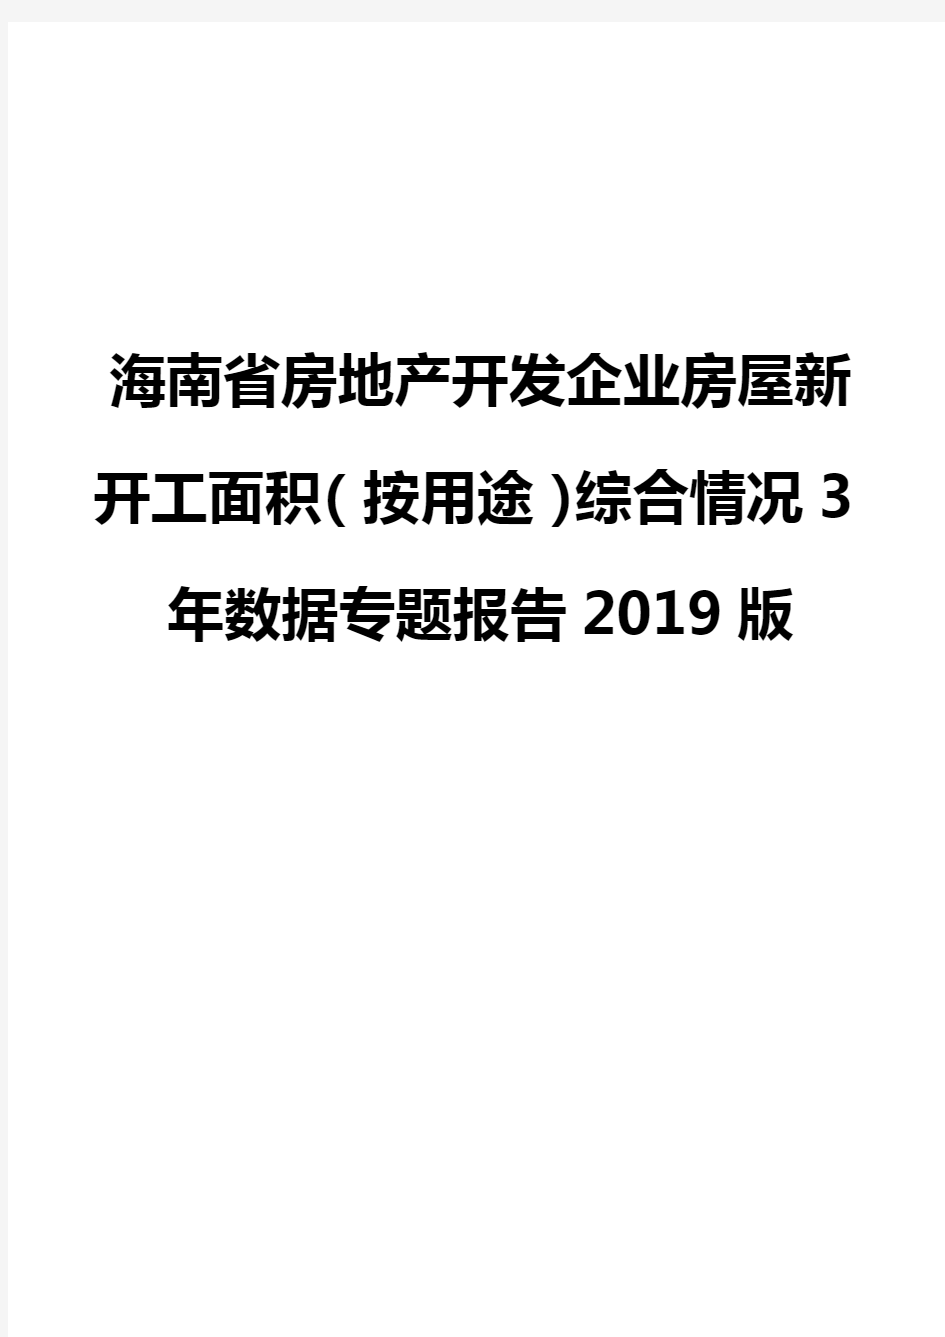 海南省房地产开发企业房屋新开工面积(按用途)综合情况3年数据专题报告2019版